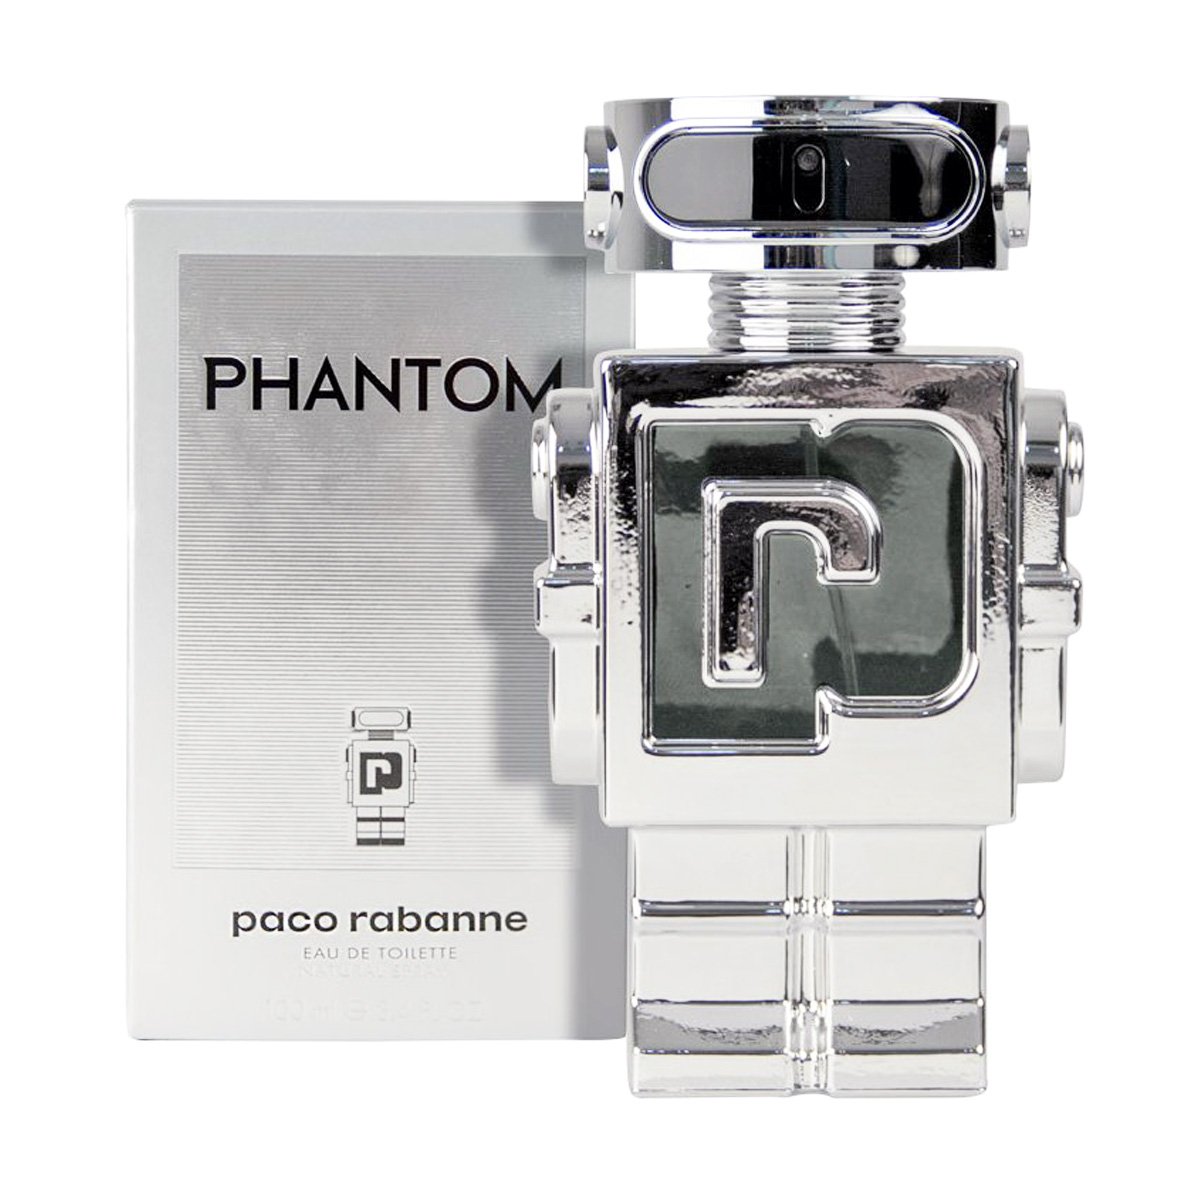 Пако рабан робот. Paco Rabanne Phantom 100ml. Paco Rabanne Phantom 100 мл. Paco Rabanne Phantom EDT, 100 ml. Paco Rabanne Phantom 50ml.